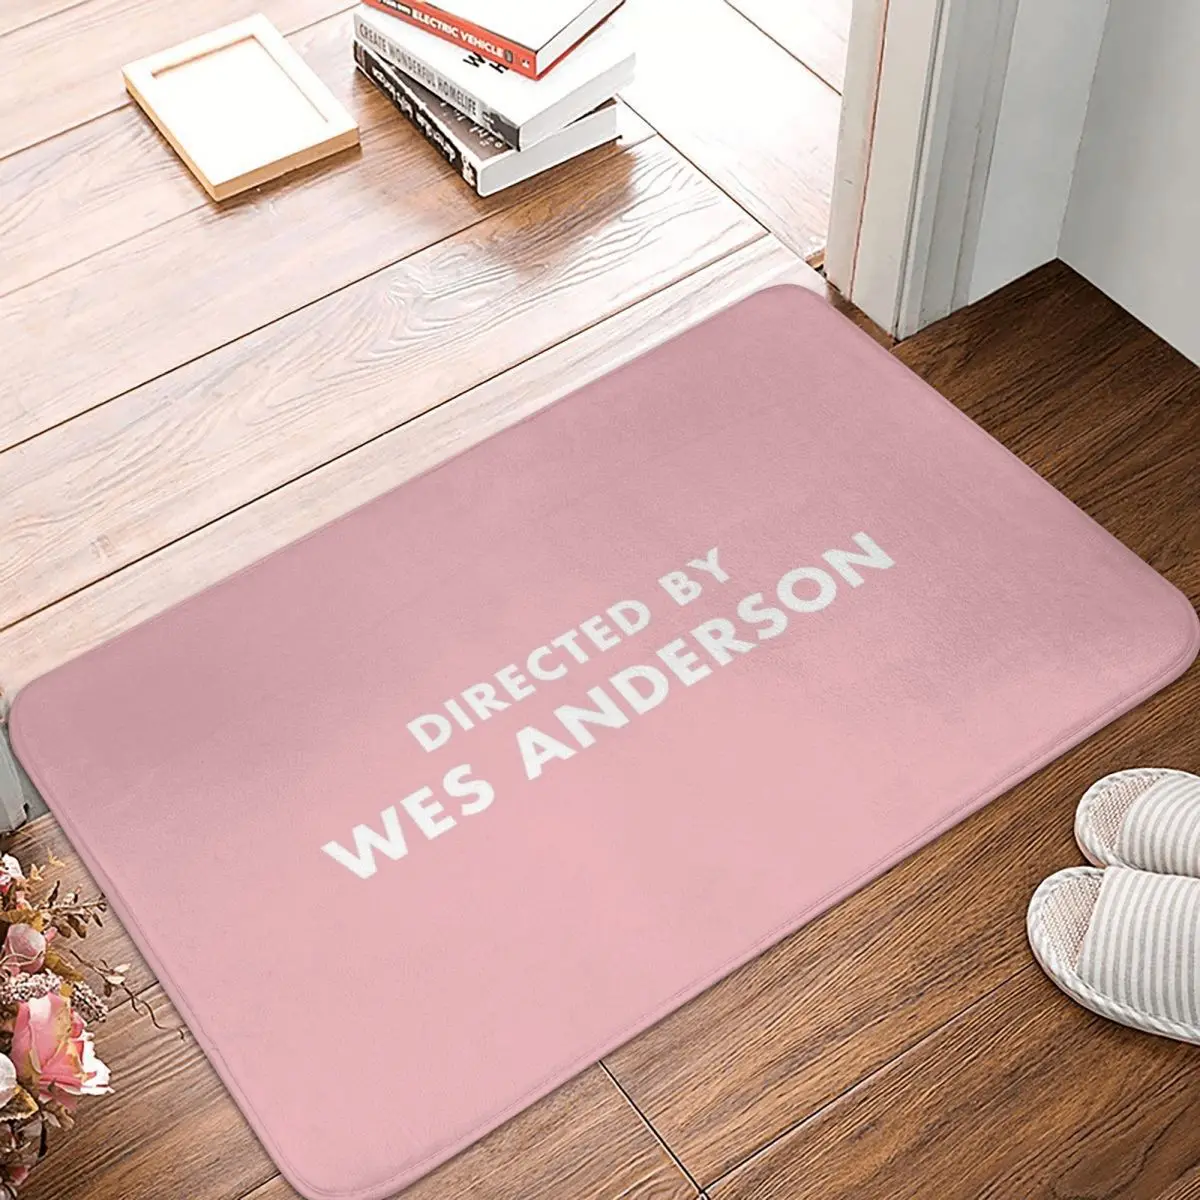 

Коврик для ванной Wes Anderson, декоративный нескользящий коврик для прихожей, гостиной, кухни, ванной комнаты